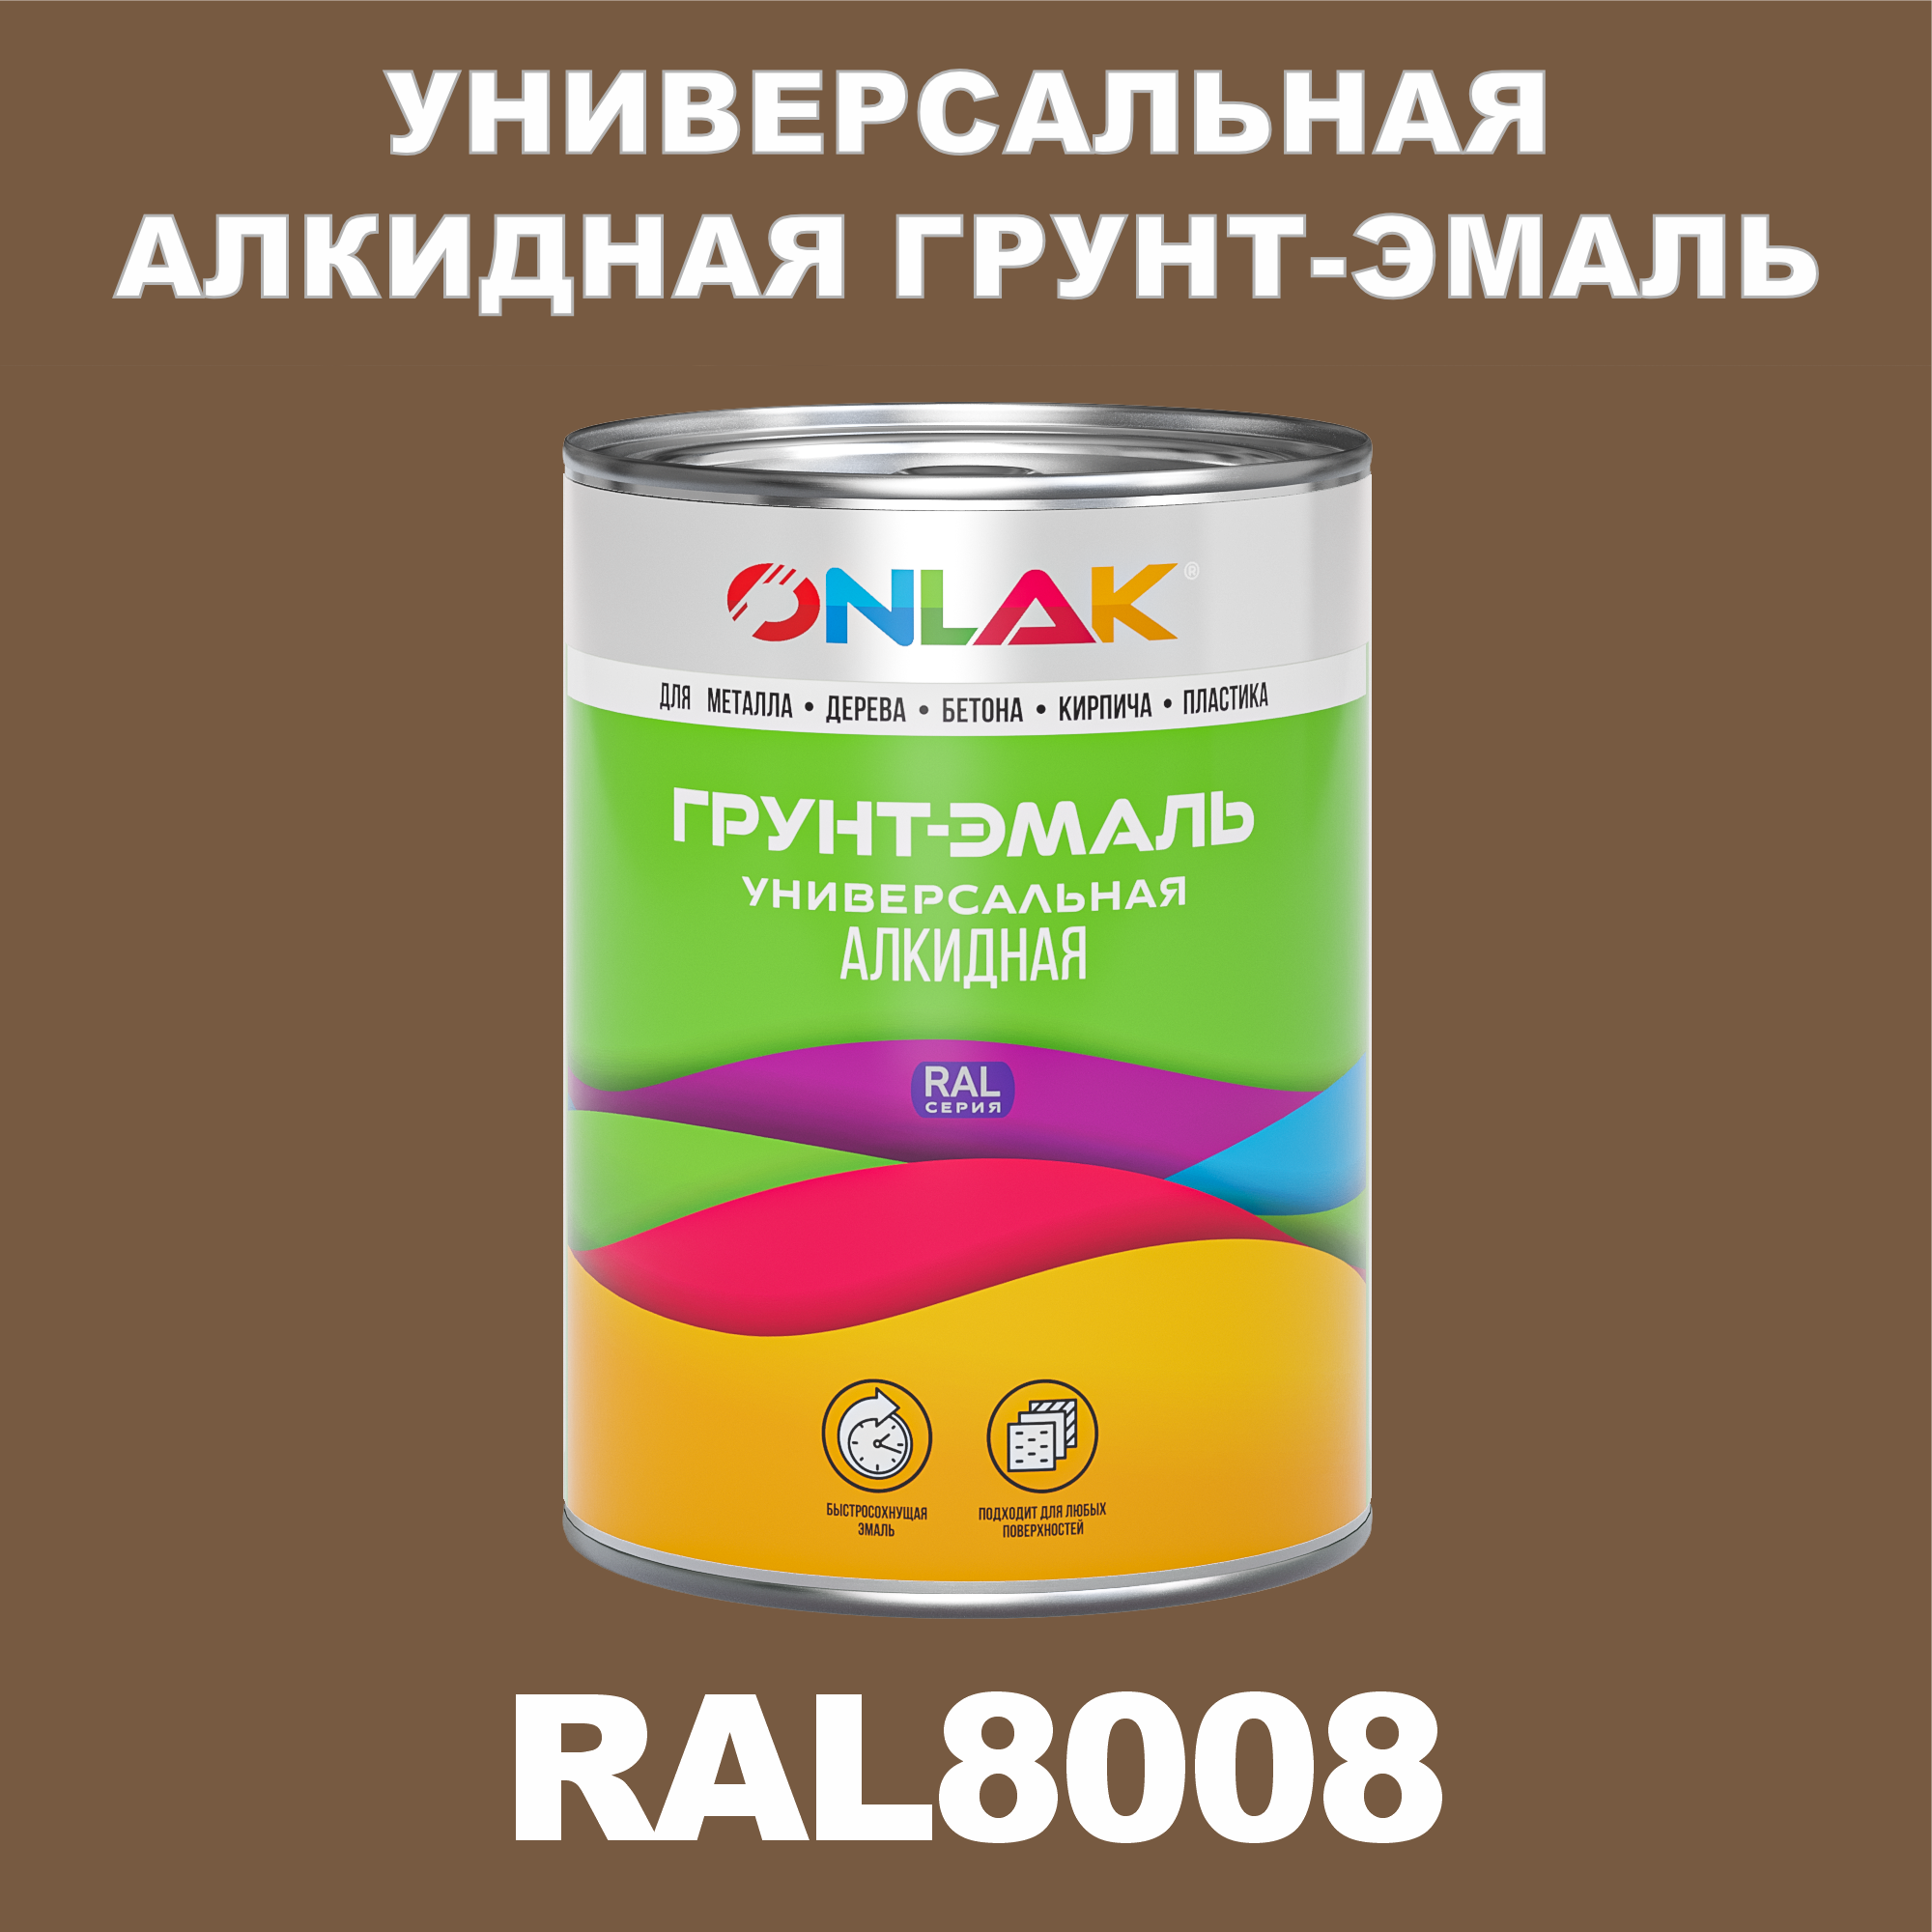 Грунт-эмаль ONLAK 1К RAL8008 антикоррозионная алкидная по металлу по ржавчине 1 кг грунт эмаль yollo по ржавчине алкидная серая 0 9 кг